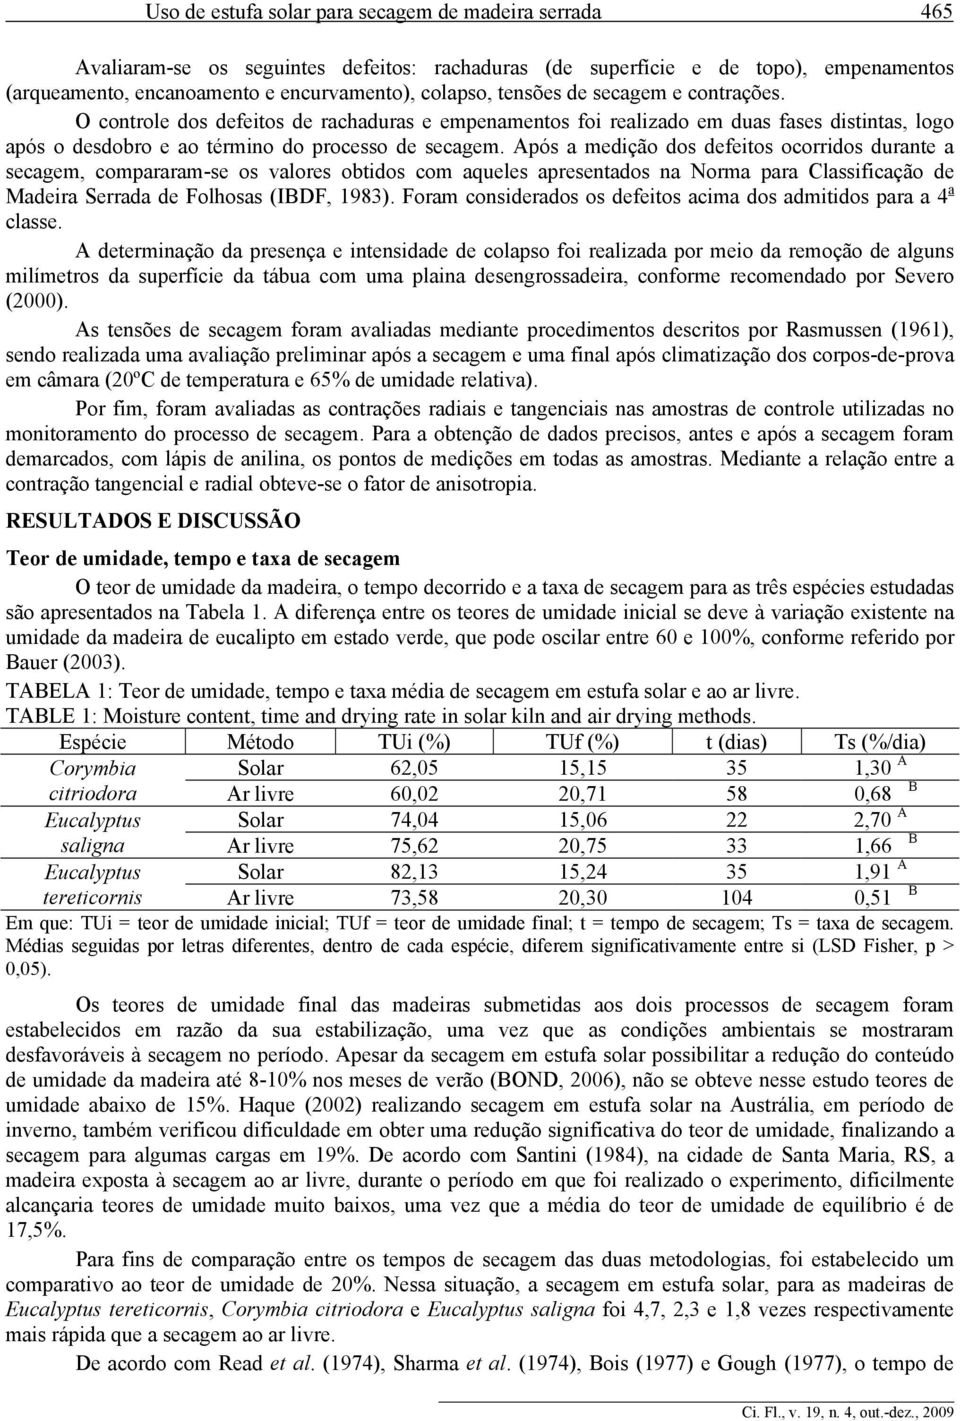 Após a medição dos defeitos ocorridos durante a secagem, compararam-se os valores obtidos com aqueles apresentados na Norma para Classificação de Madeira Serrada de Folhosas (IBDF, 1983).